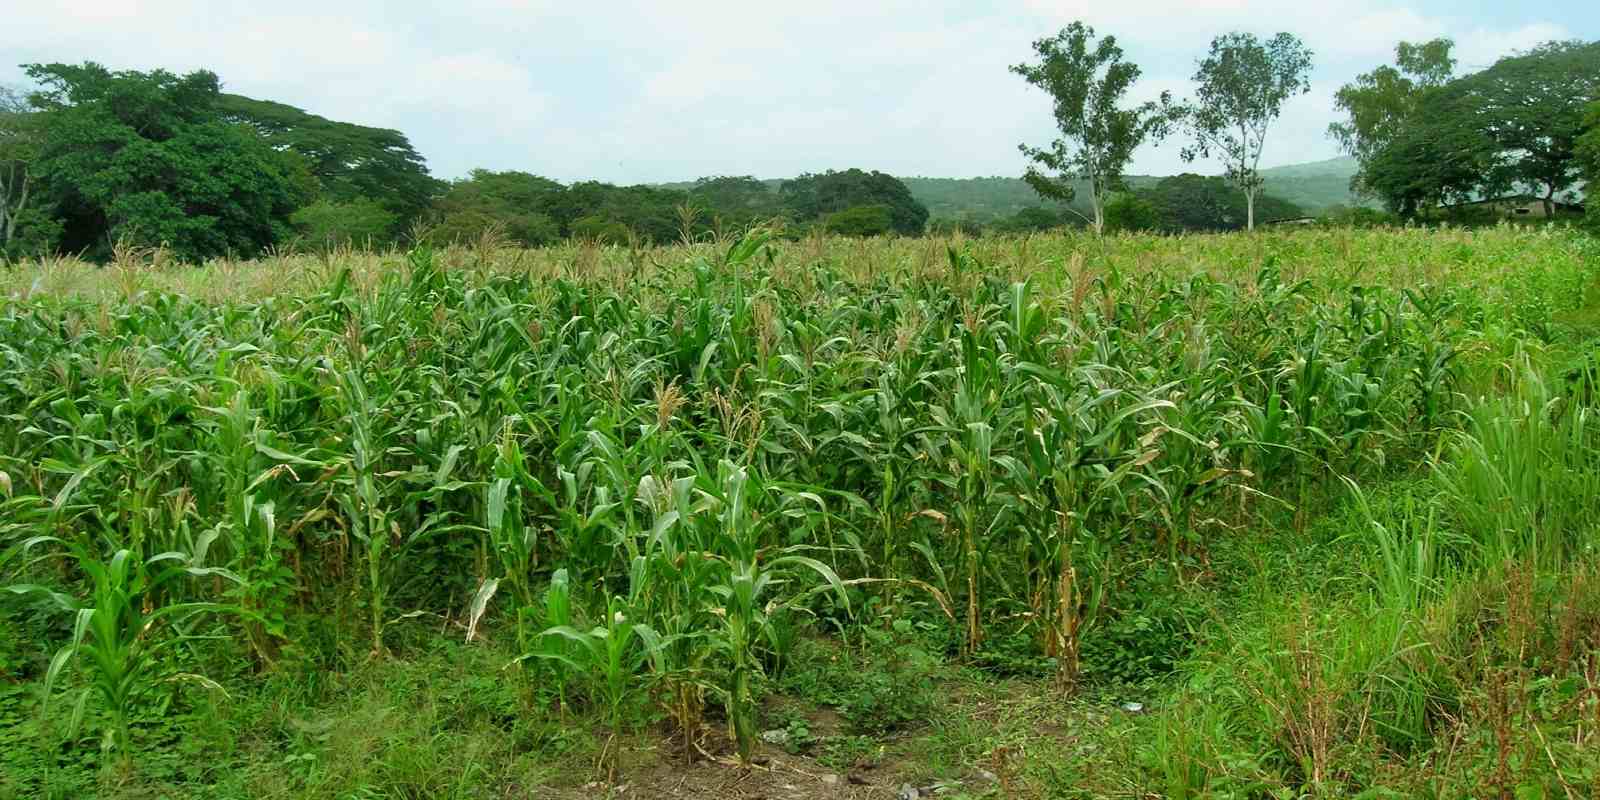 La siembra de maíz y frijoles es una de las alternativas de subsistencia para familias campesinas.